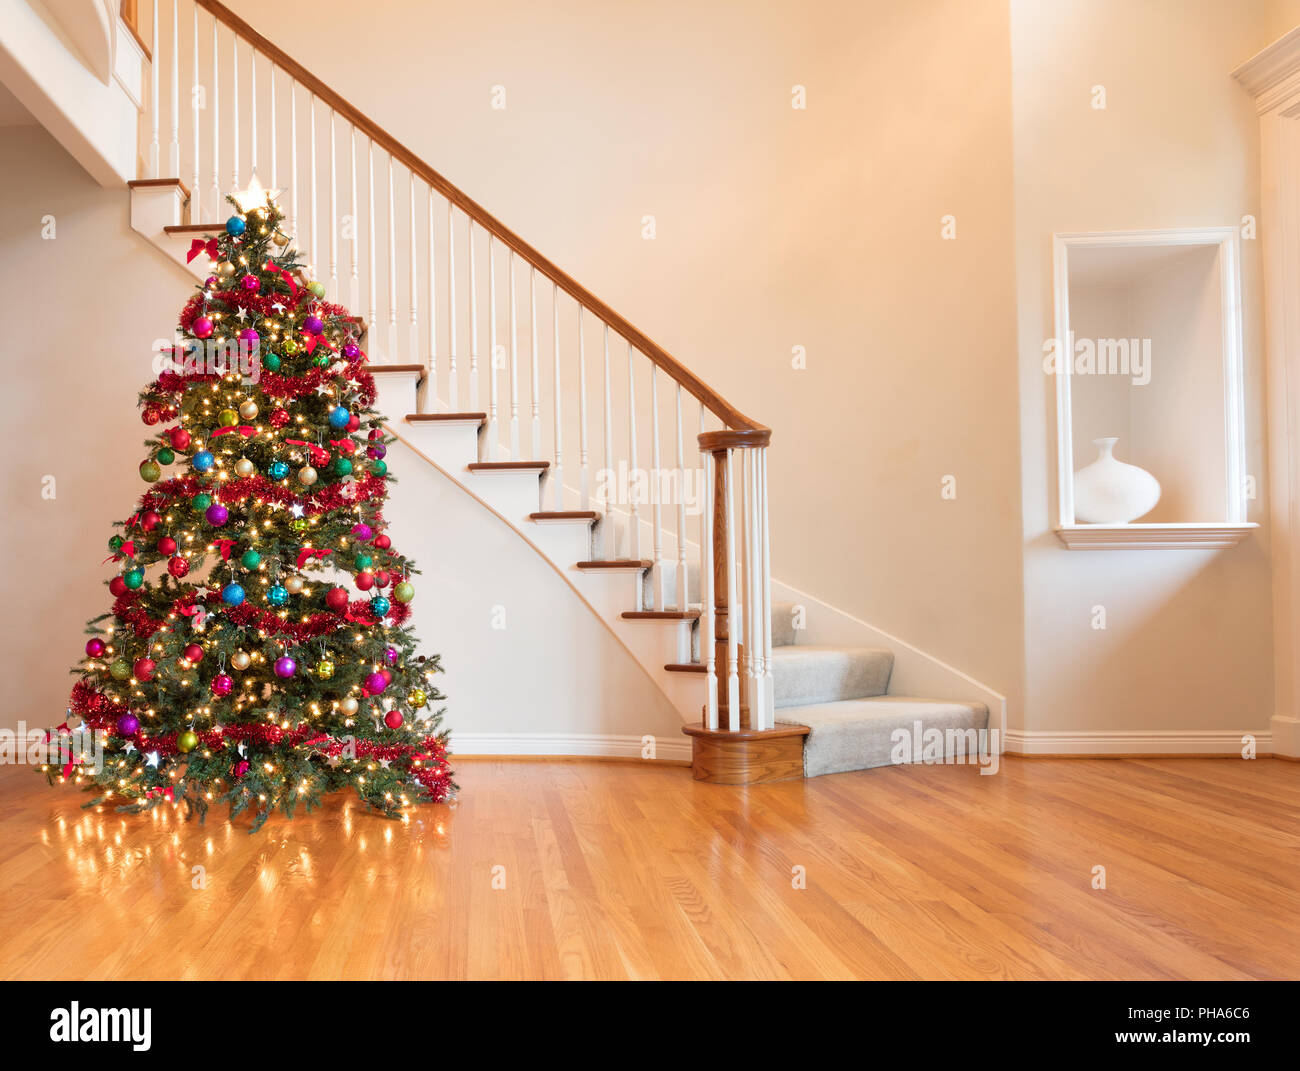 Bunt Weihnachten im Hause auf Holz Eiche eingerichtet Stockfoto